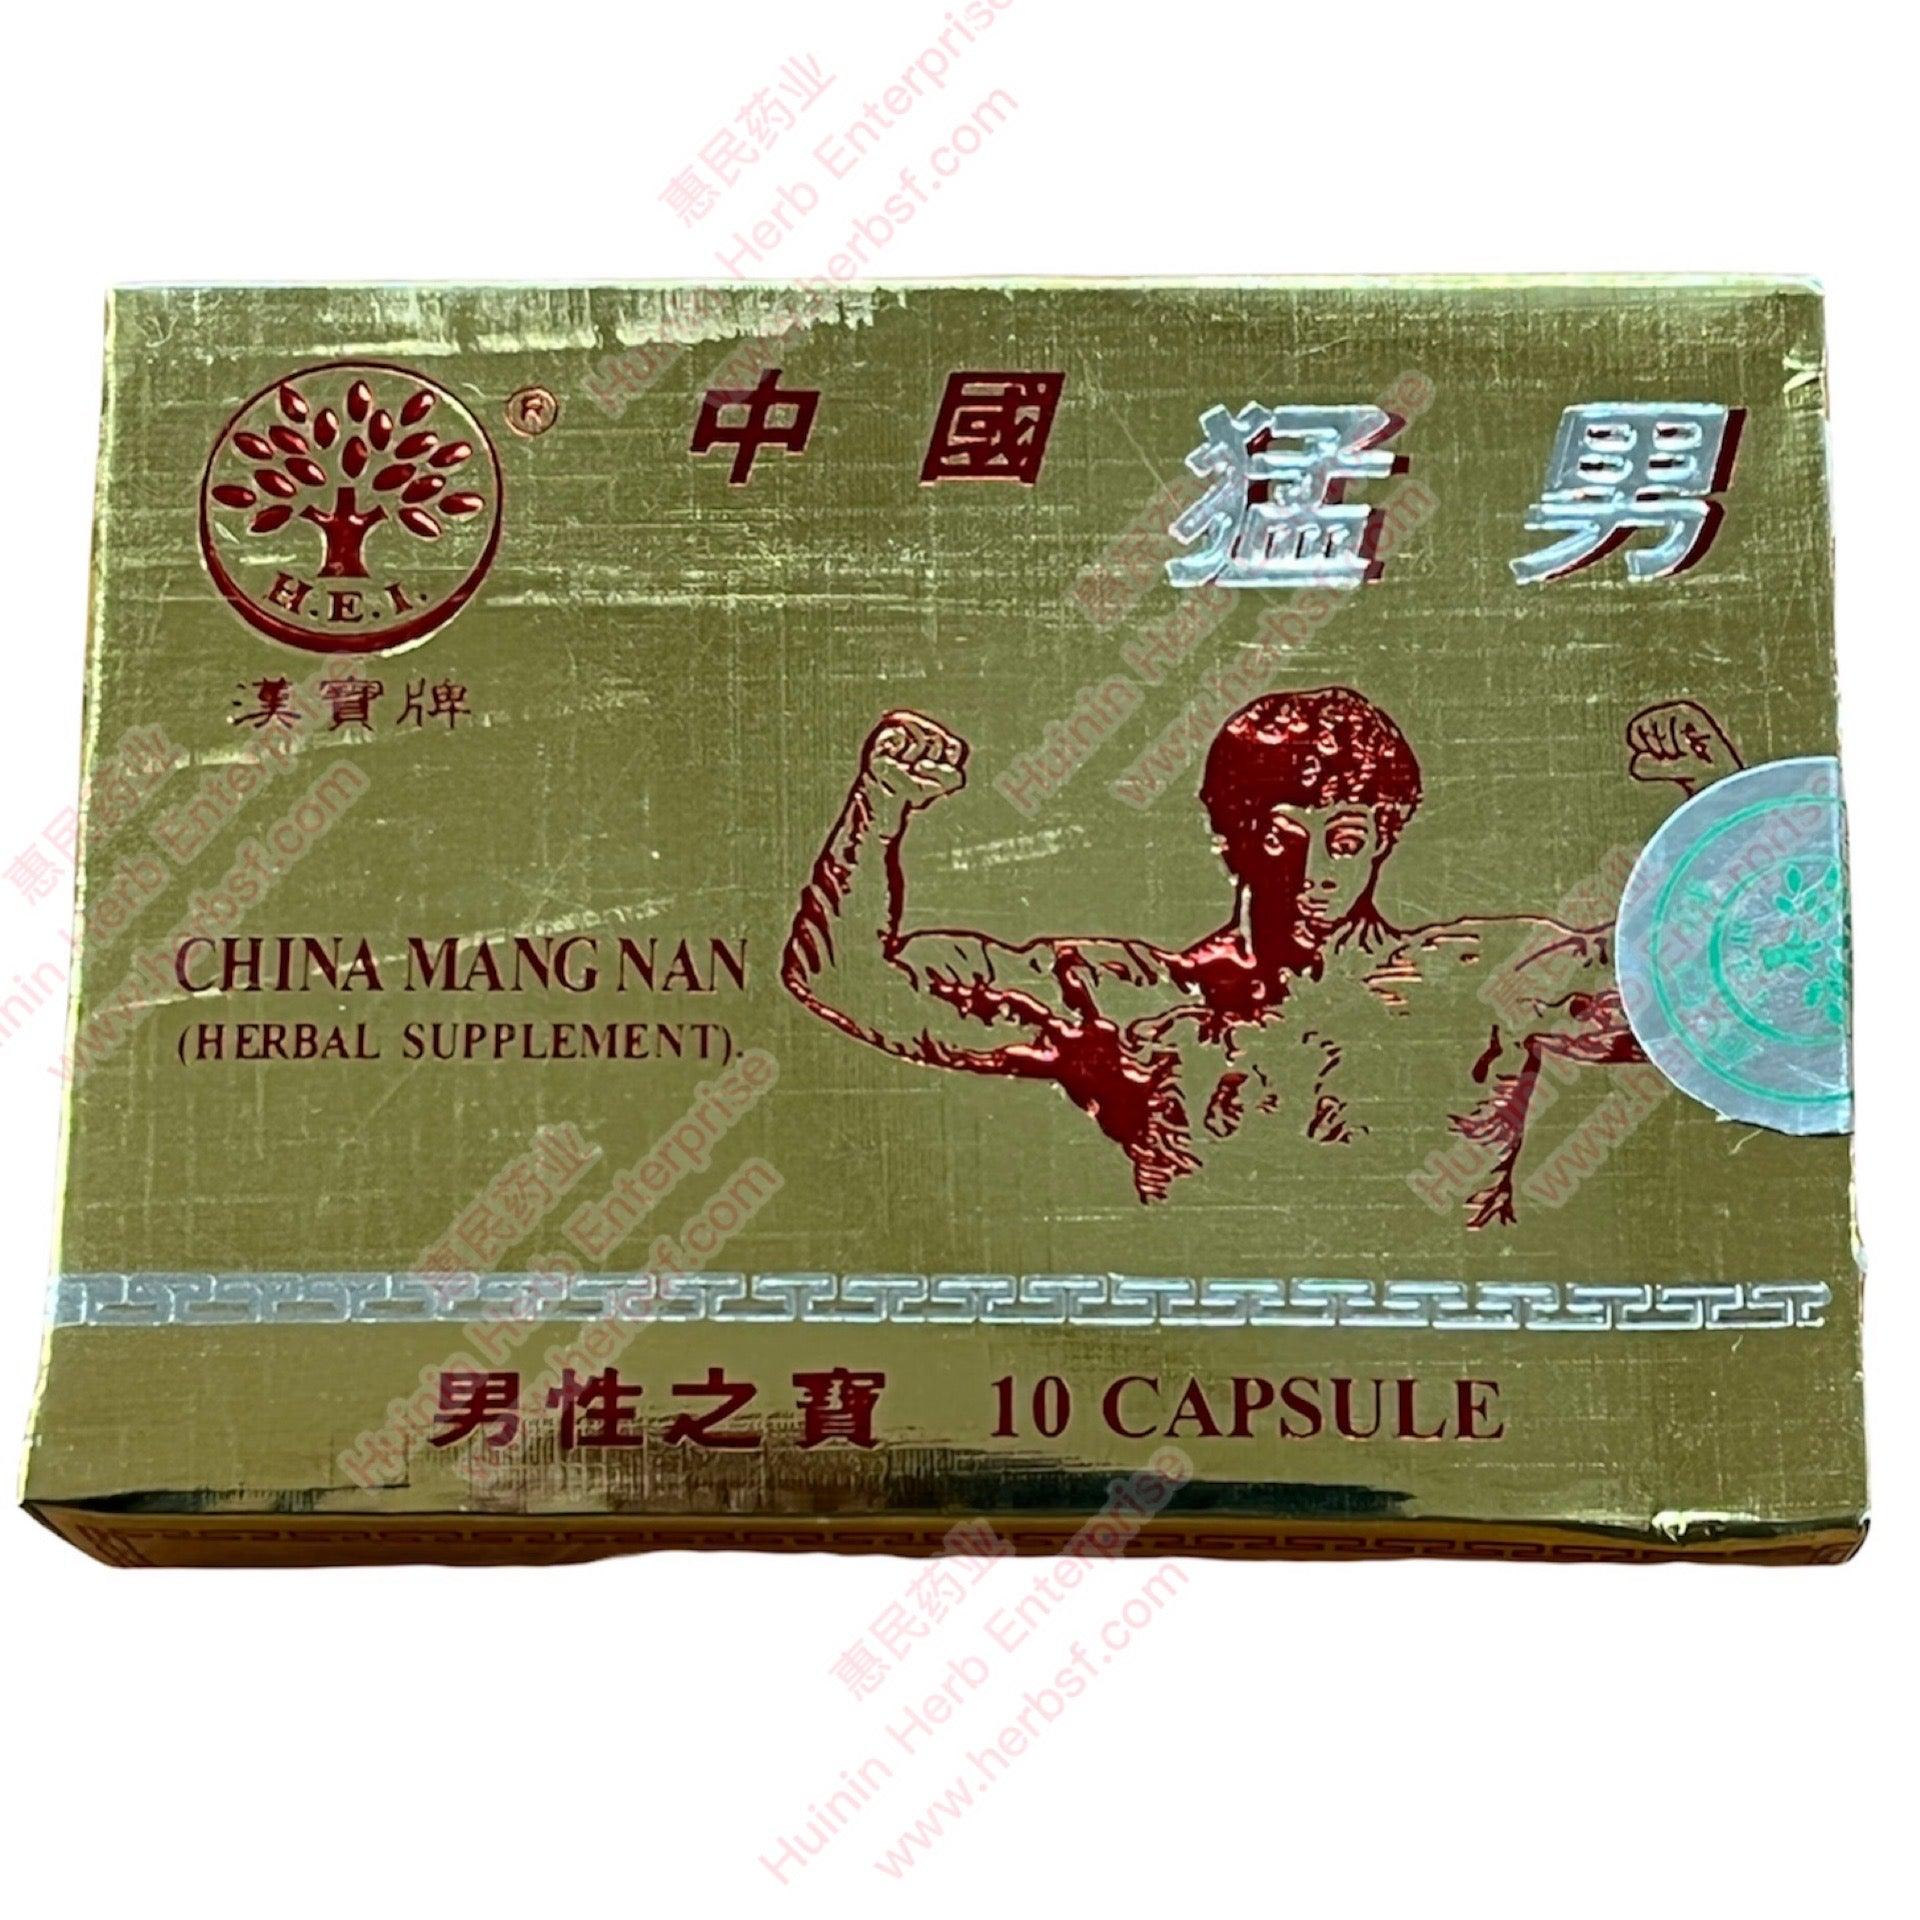 Zhong Guo Meng Nan - Huimin Herb Online, LLC